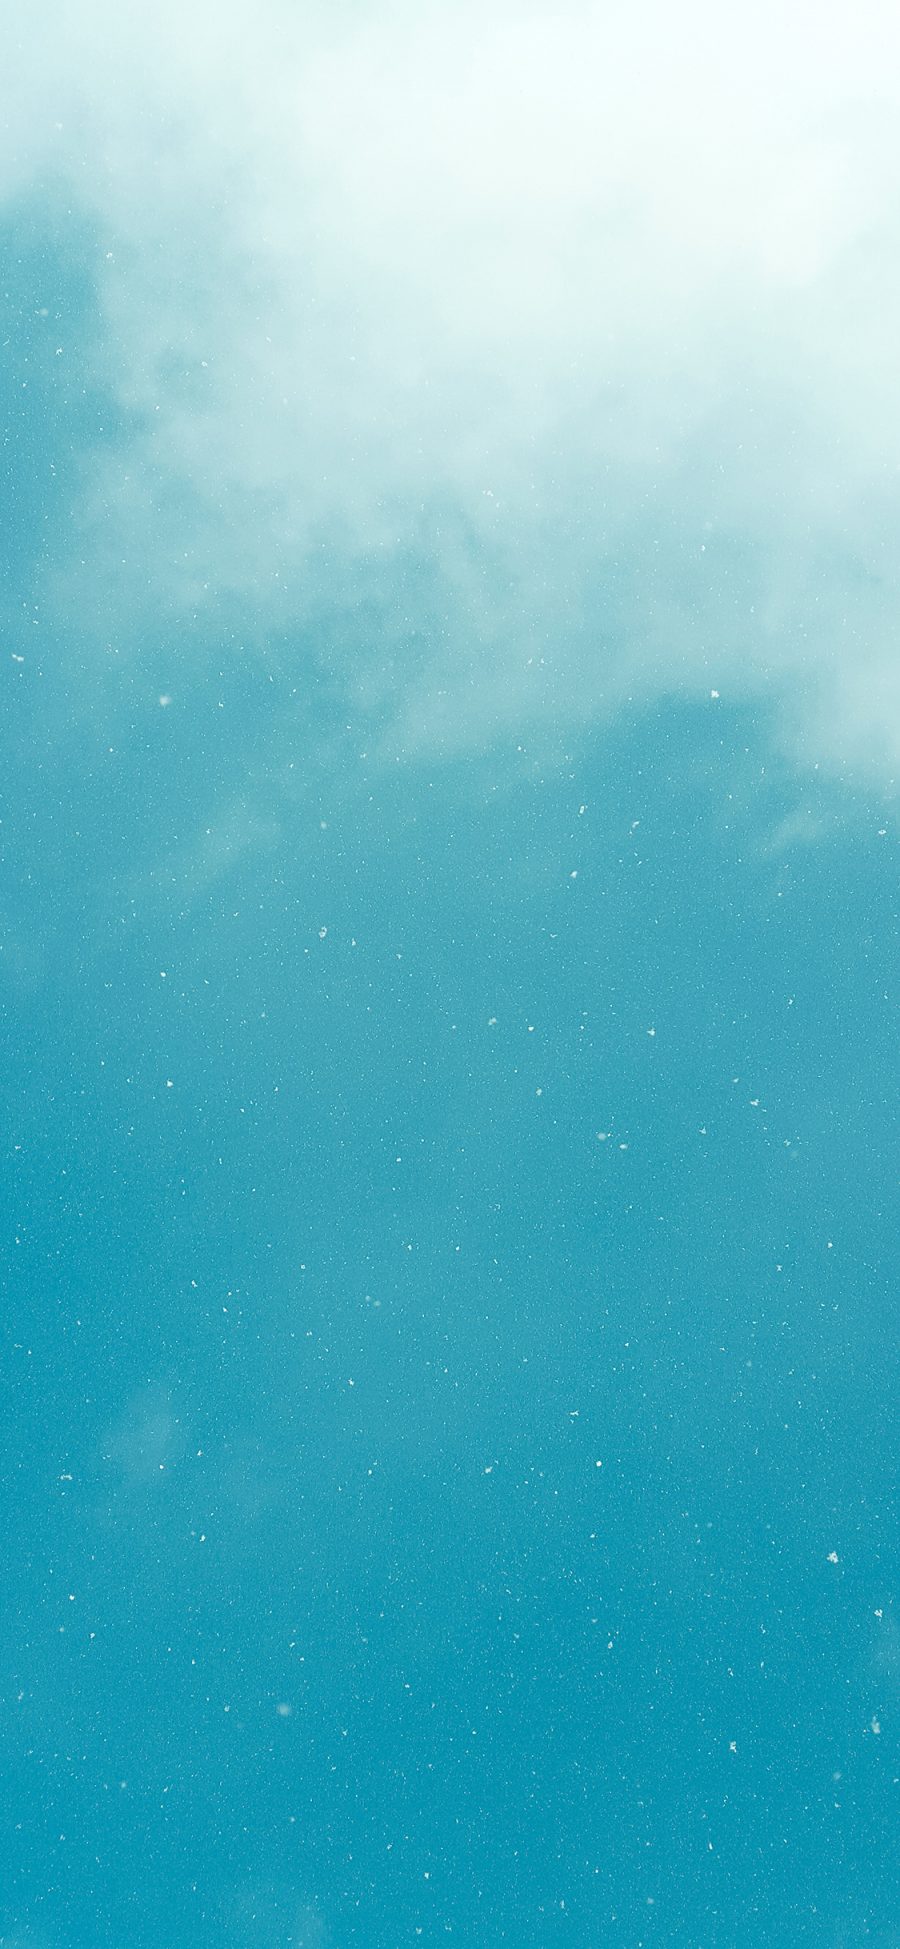 [2436×1125]天空 白云 云彩 雪花 苹果手机壁纸图片